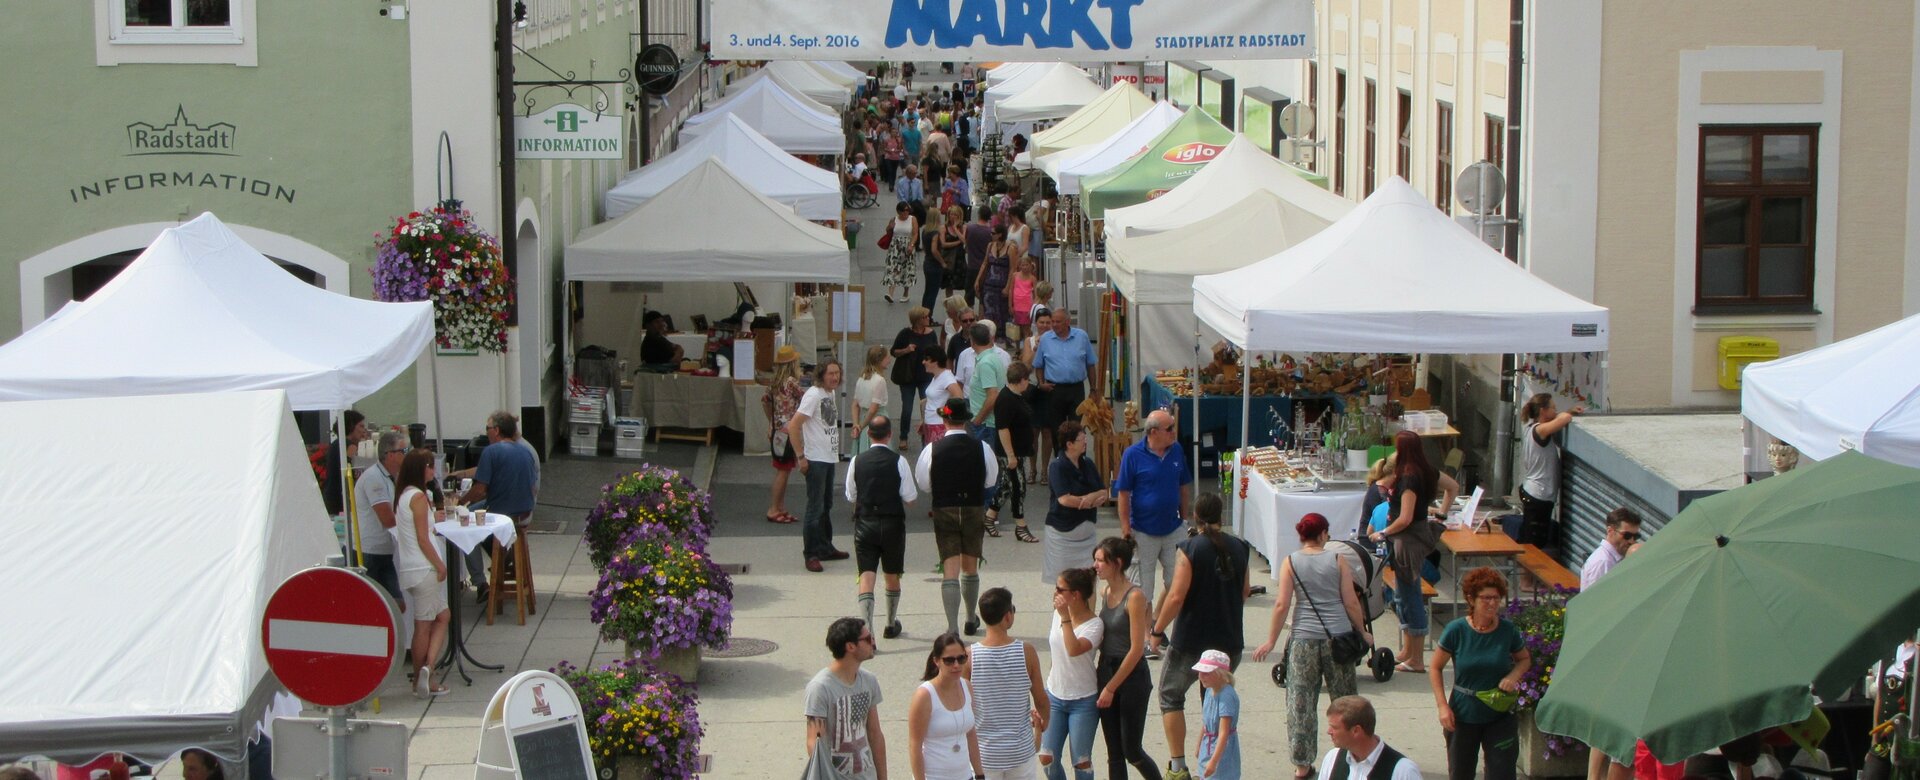 Arts and crafts market | © Kulturkreis Das Zentrum